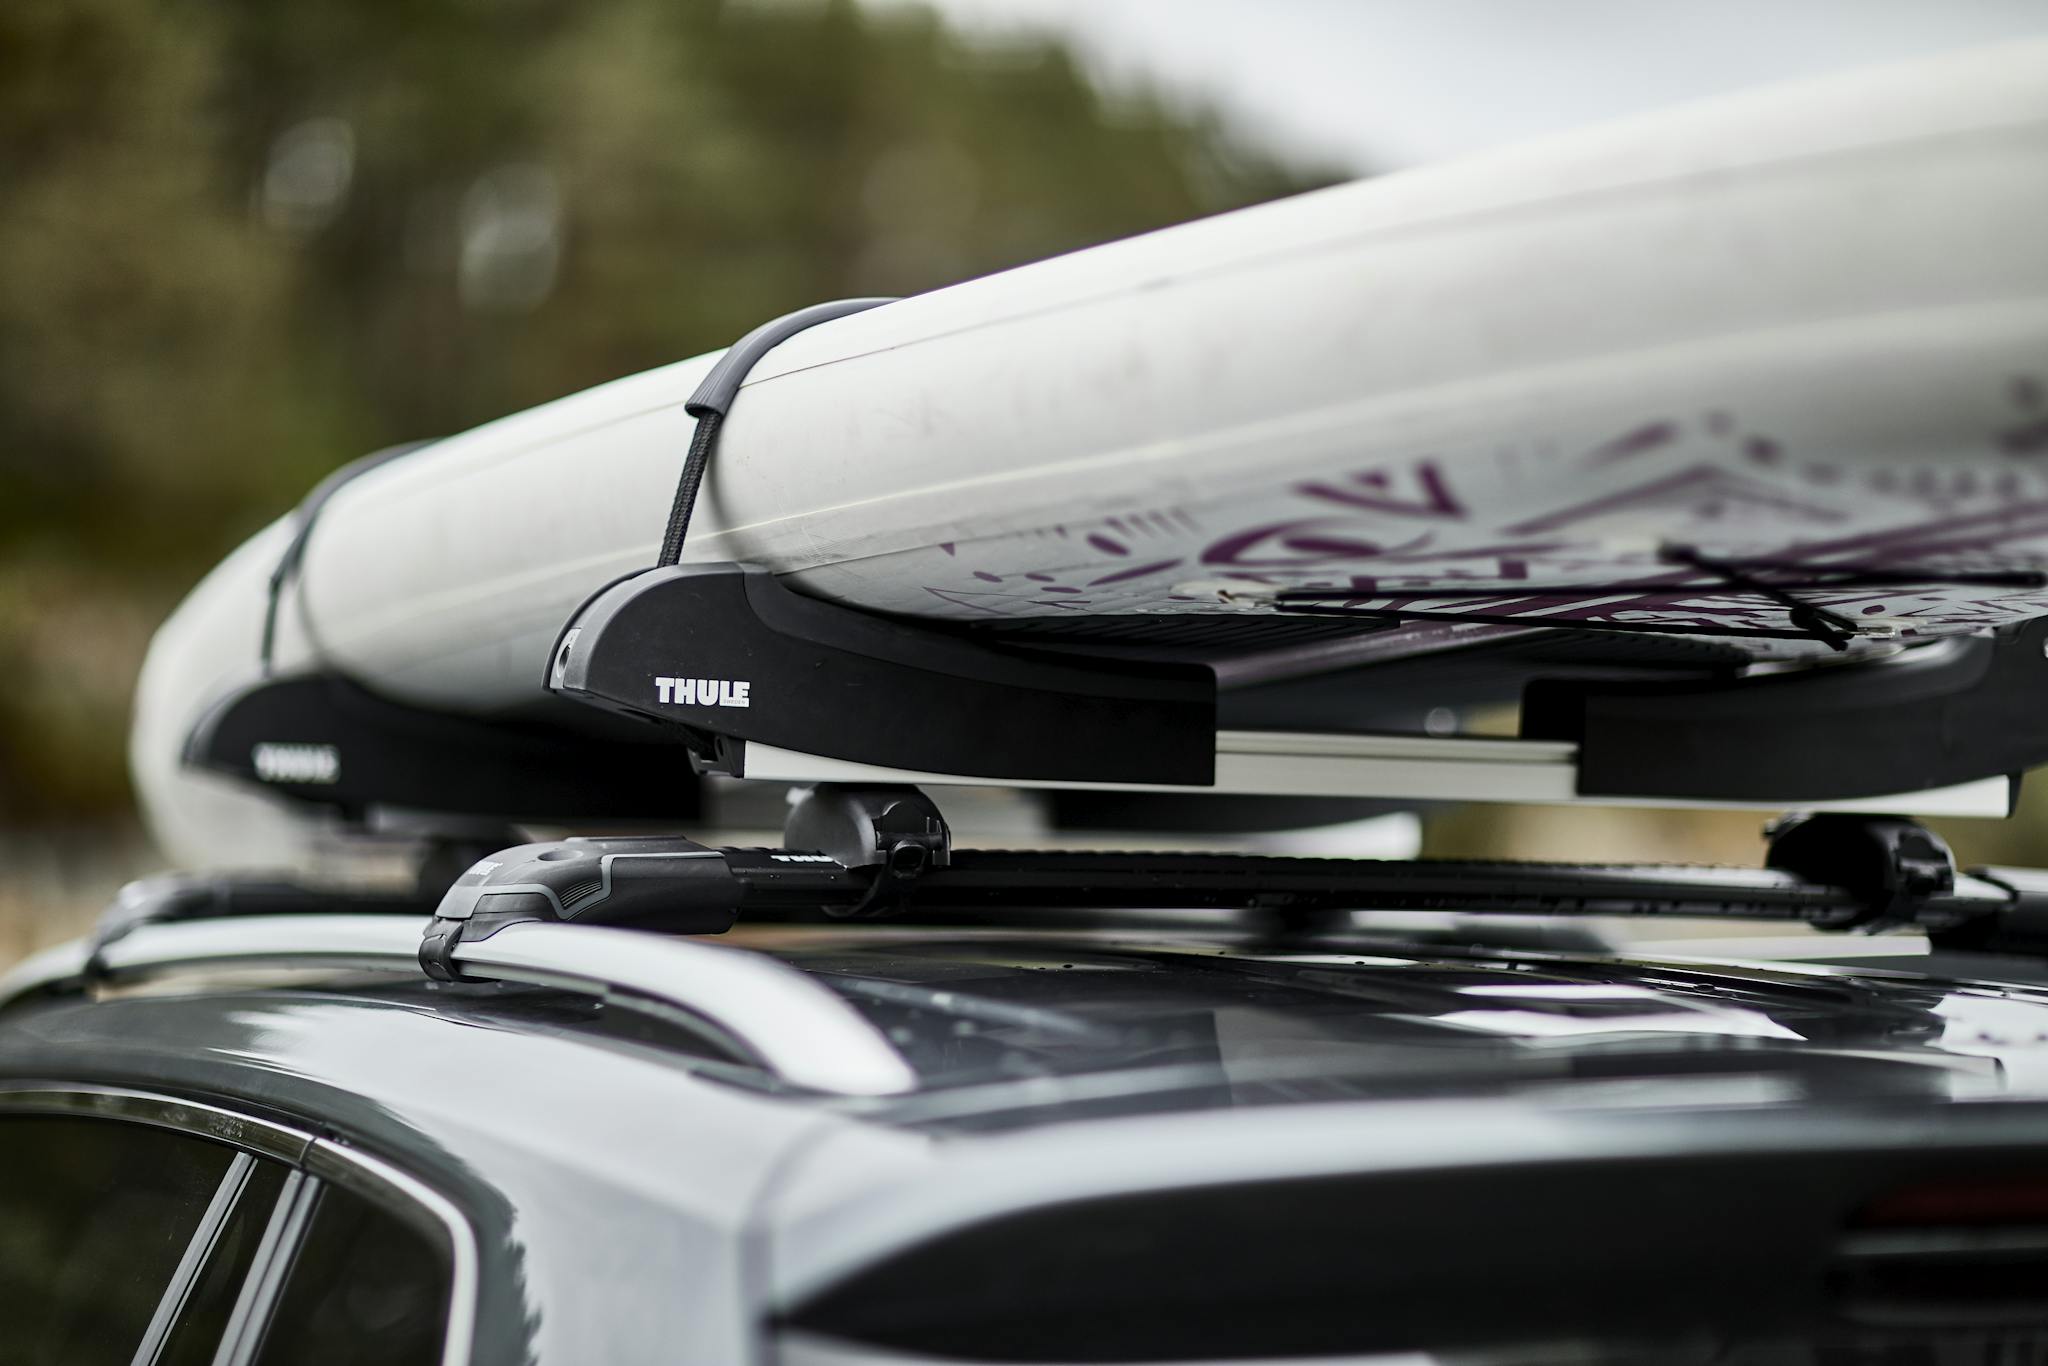 Thule SUP / Surfboard Racks